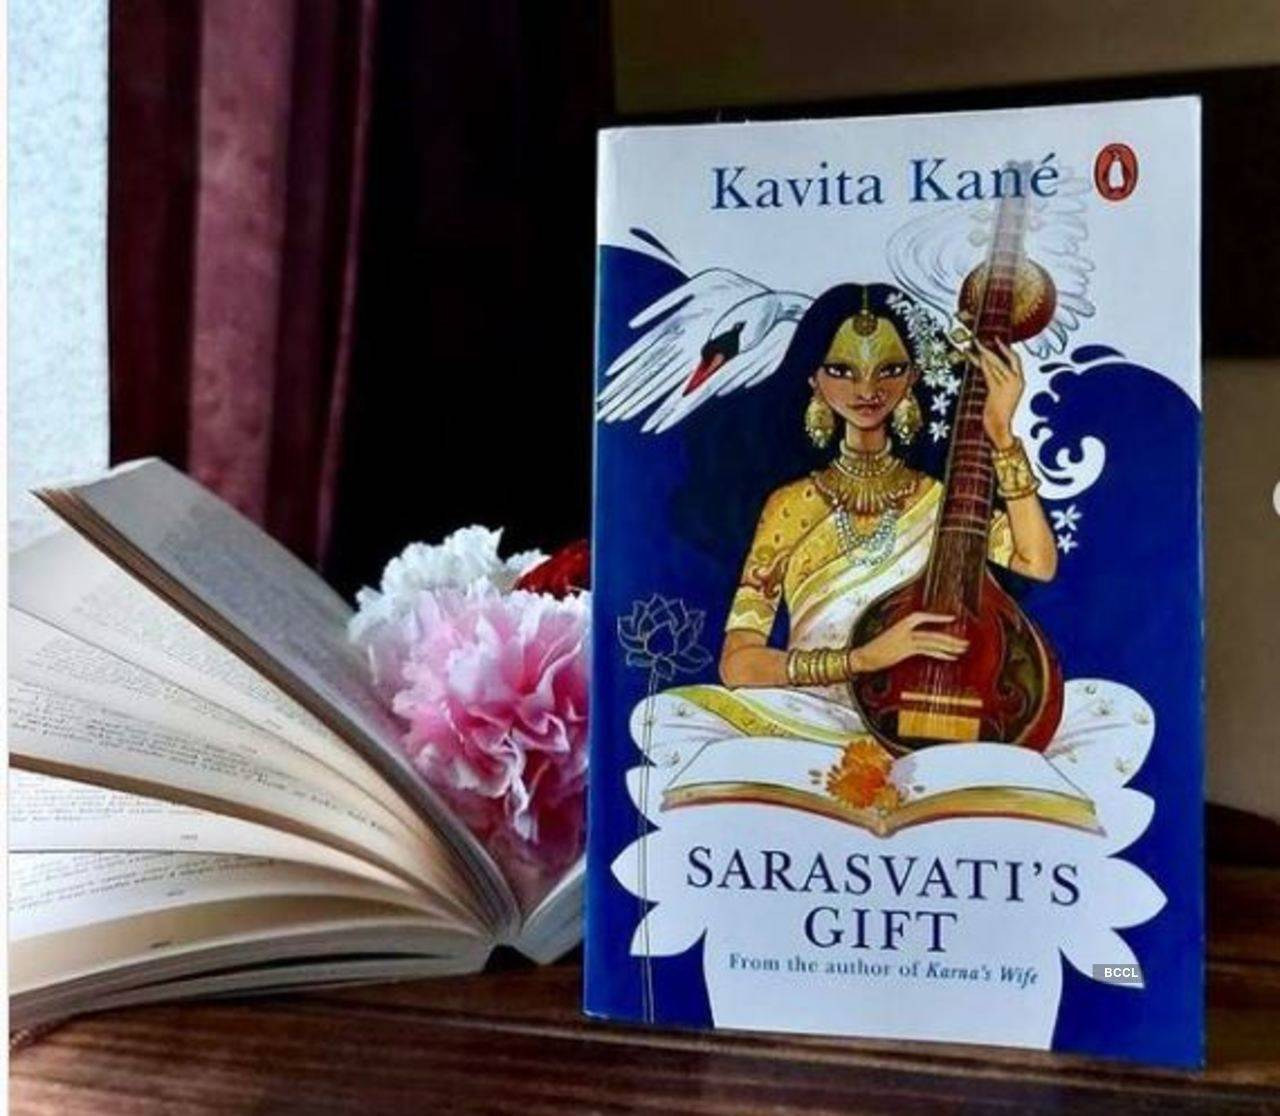 Author: Kavita Kane 